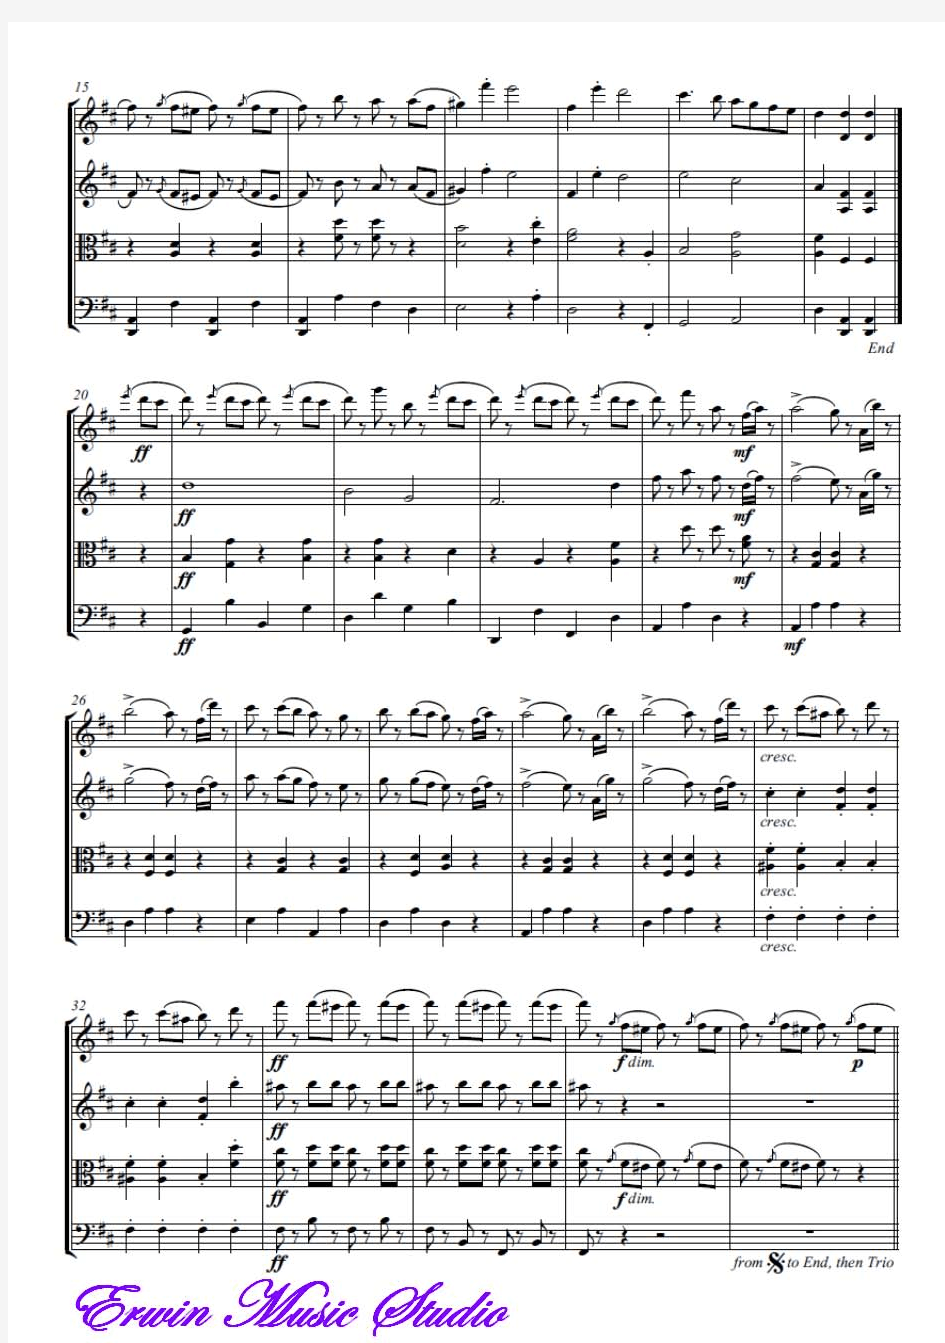 Score约翰·施特劳斯《拉德斯基进行曲》弦乐四重奏总谱 分谱